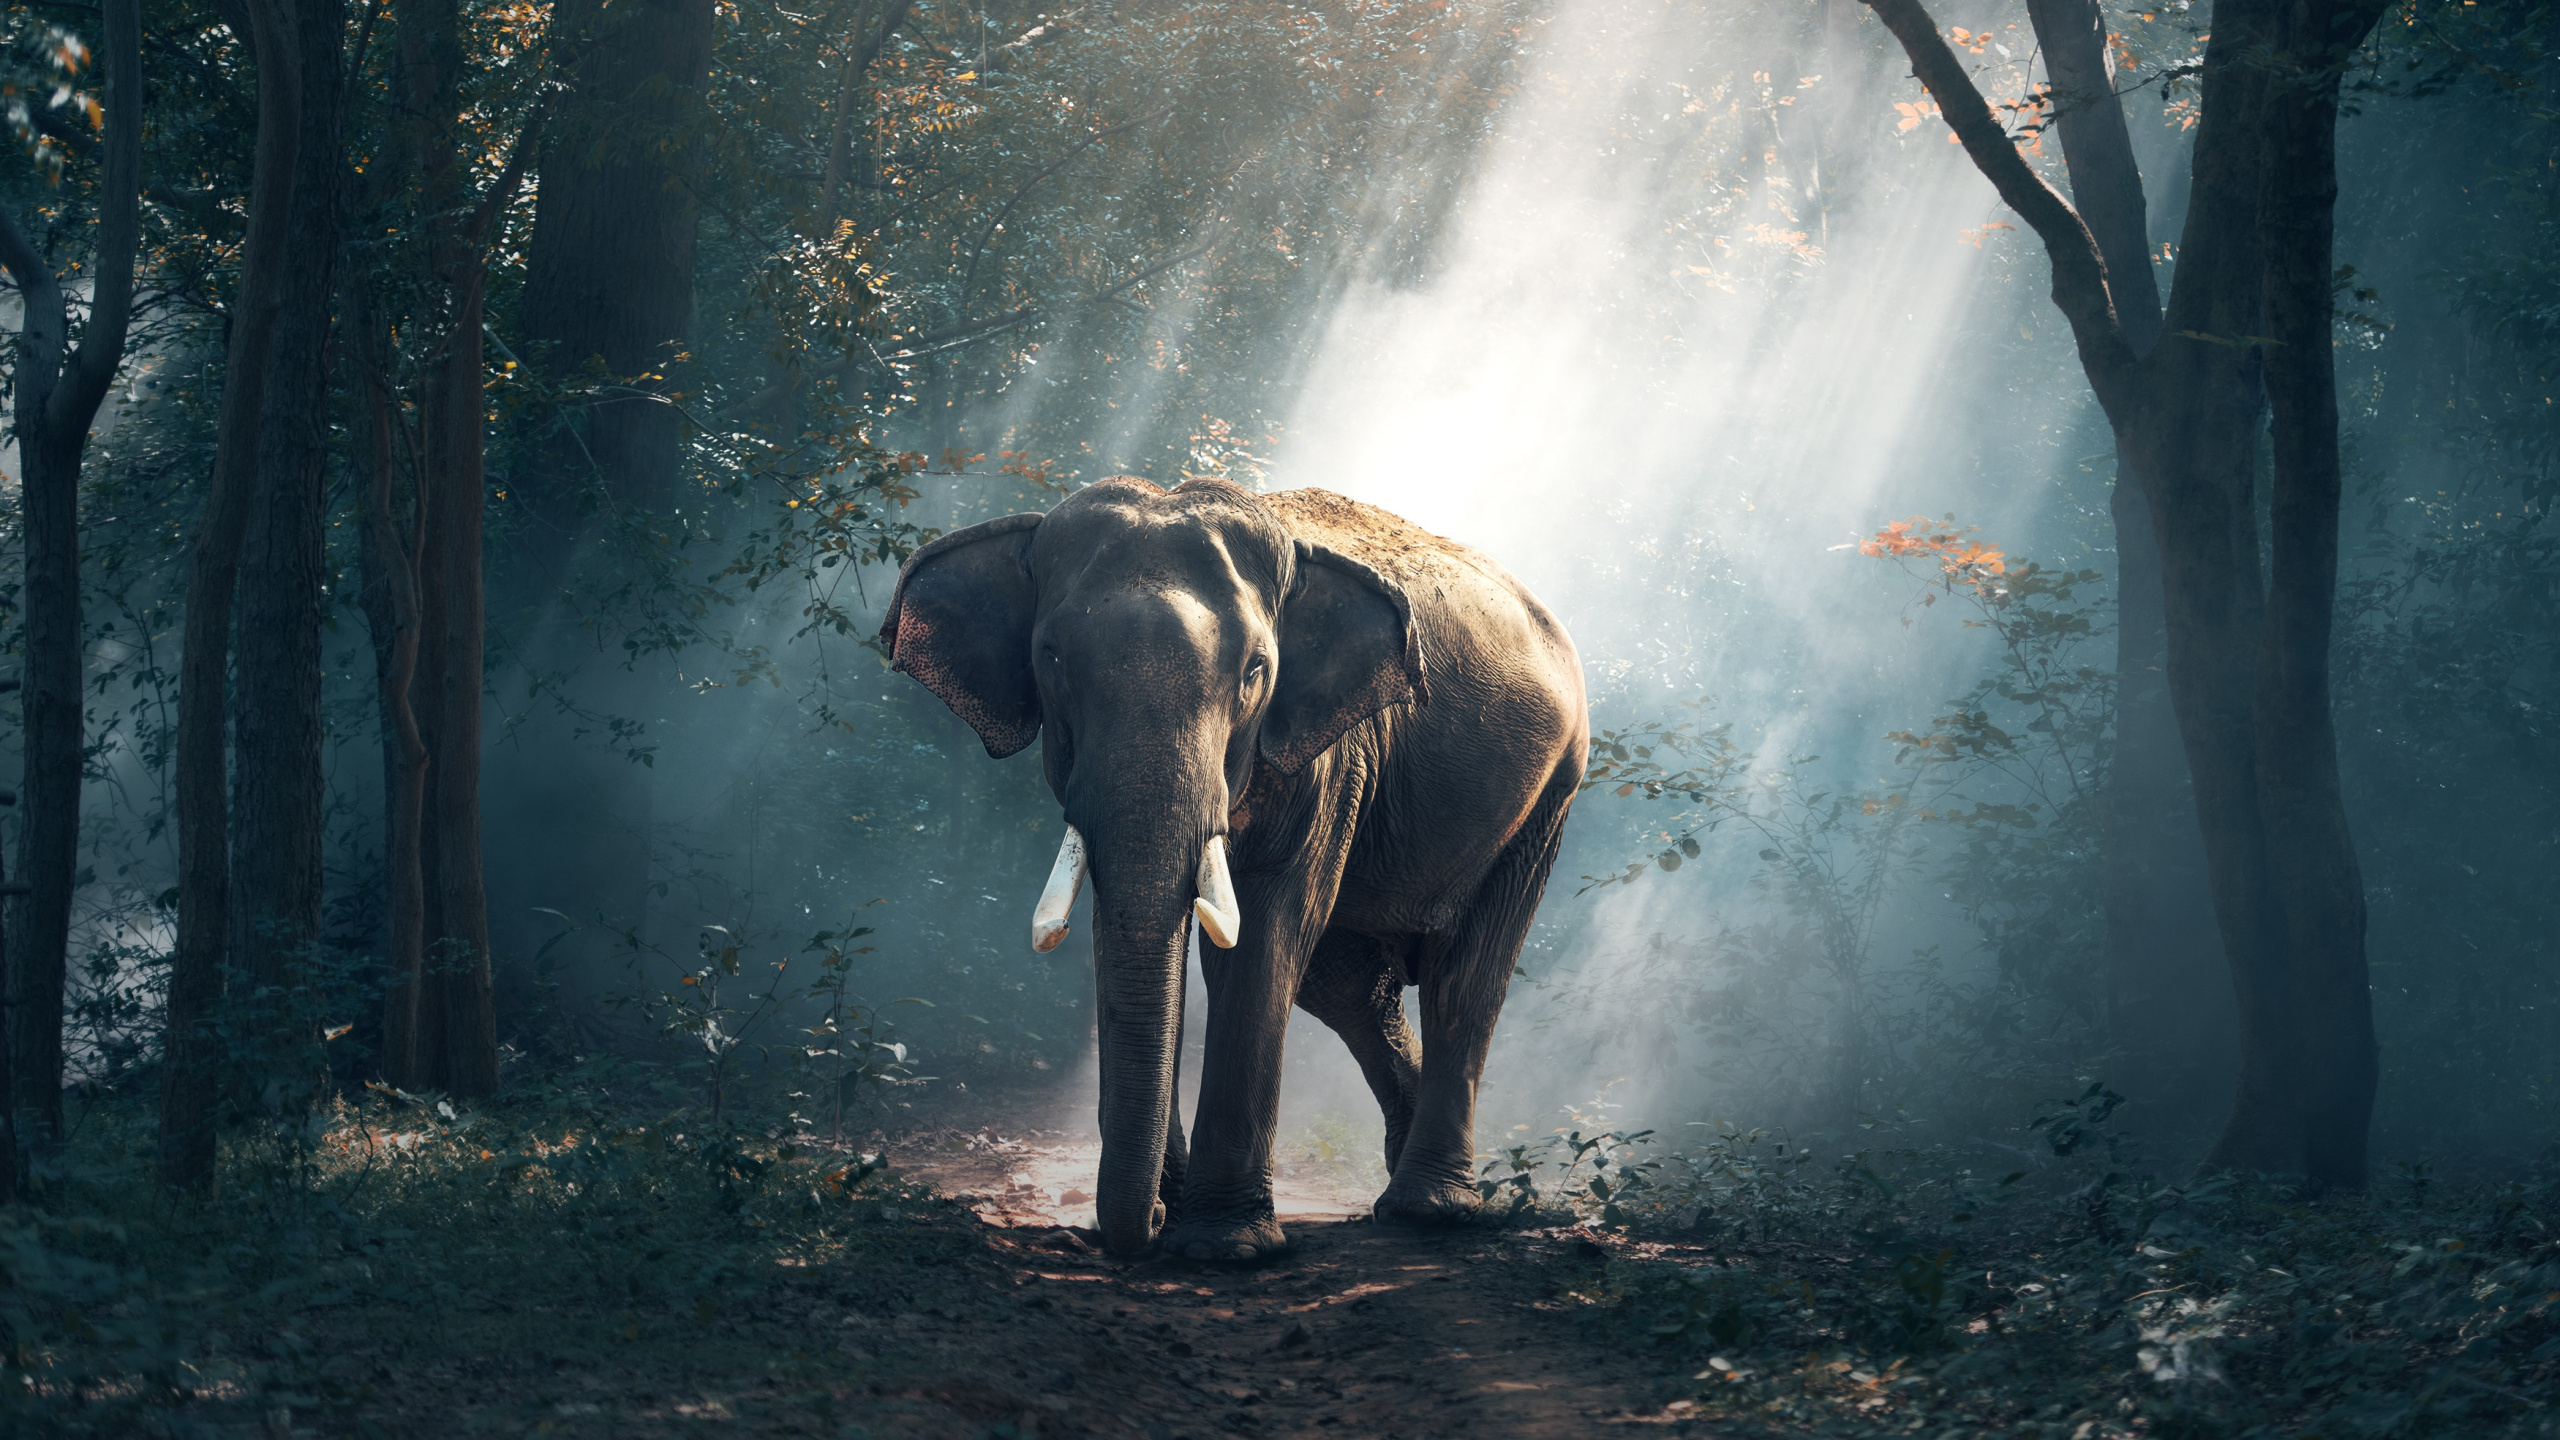 非洲森林中的大象, 野生动物, 印度大象, 光, 大象和猛犸象 壁纸 2560x1440 允许